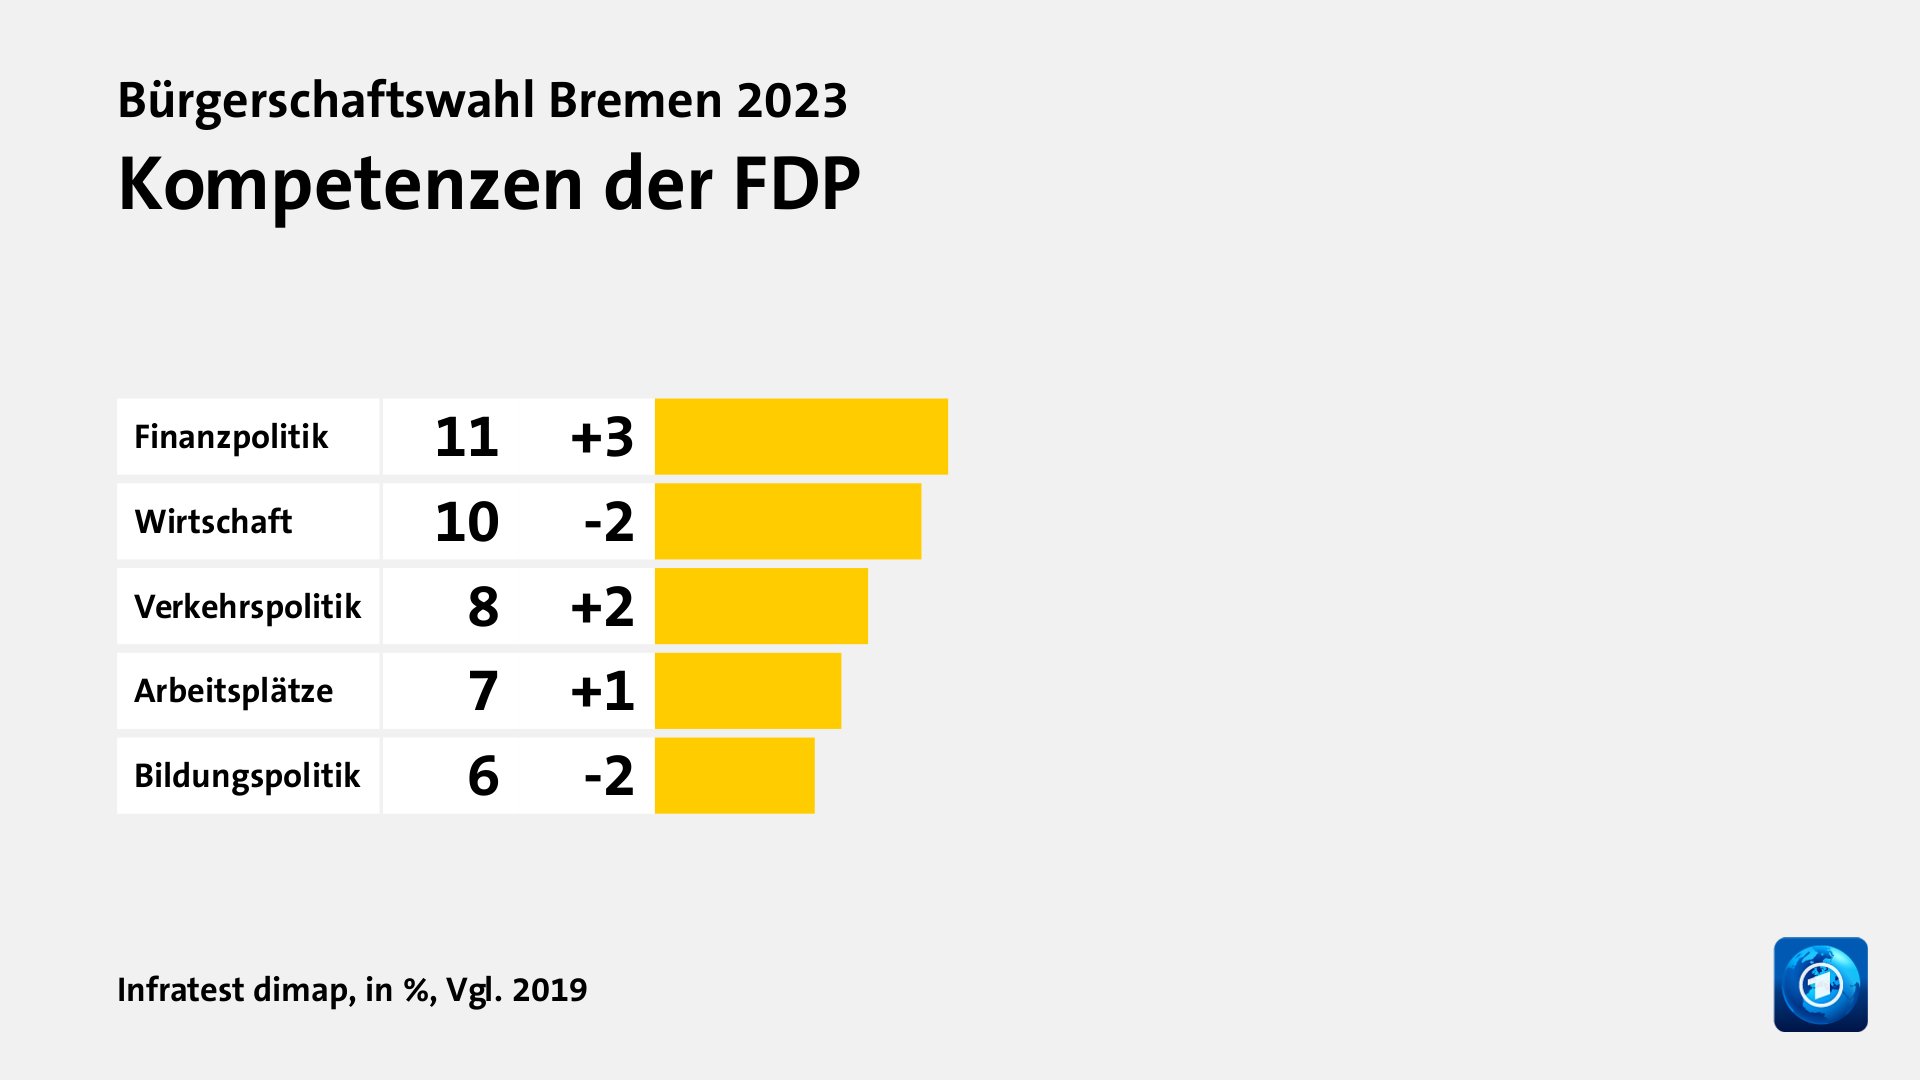 Kompetenzen der FDP, in %, Vgl. 2019: Finanzpolitik 11, Wirtschaft 10, Verkehrspolitik 8, Arbeitsplätze 7, Bildungspolitik 6, Quelle: Infratest dimap